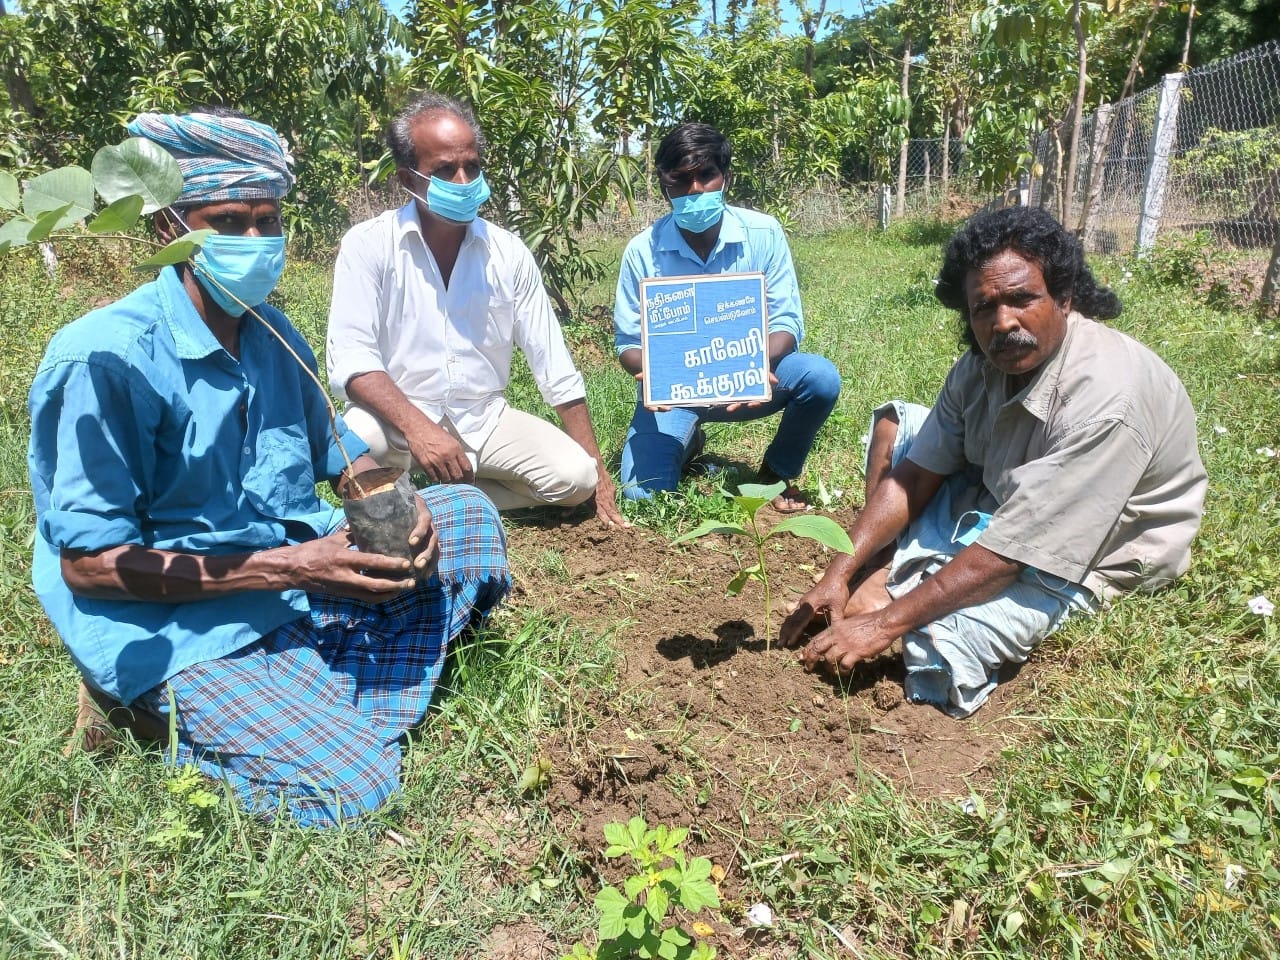 Farmers to plant 25,000 saplings across Tamil Nadu for ‘Van Mahotsav’